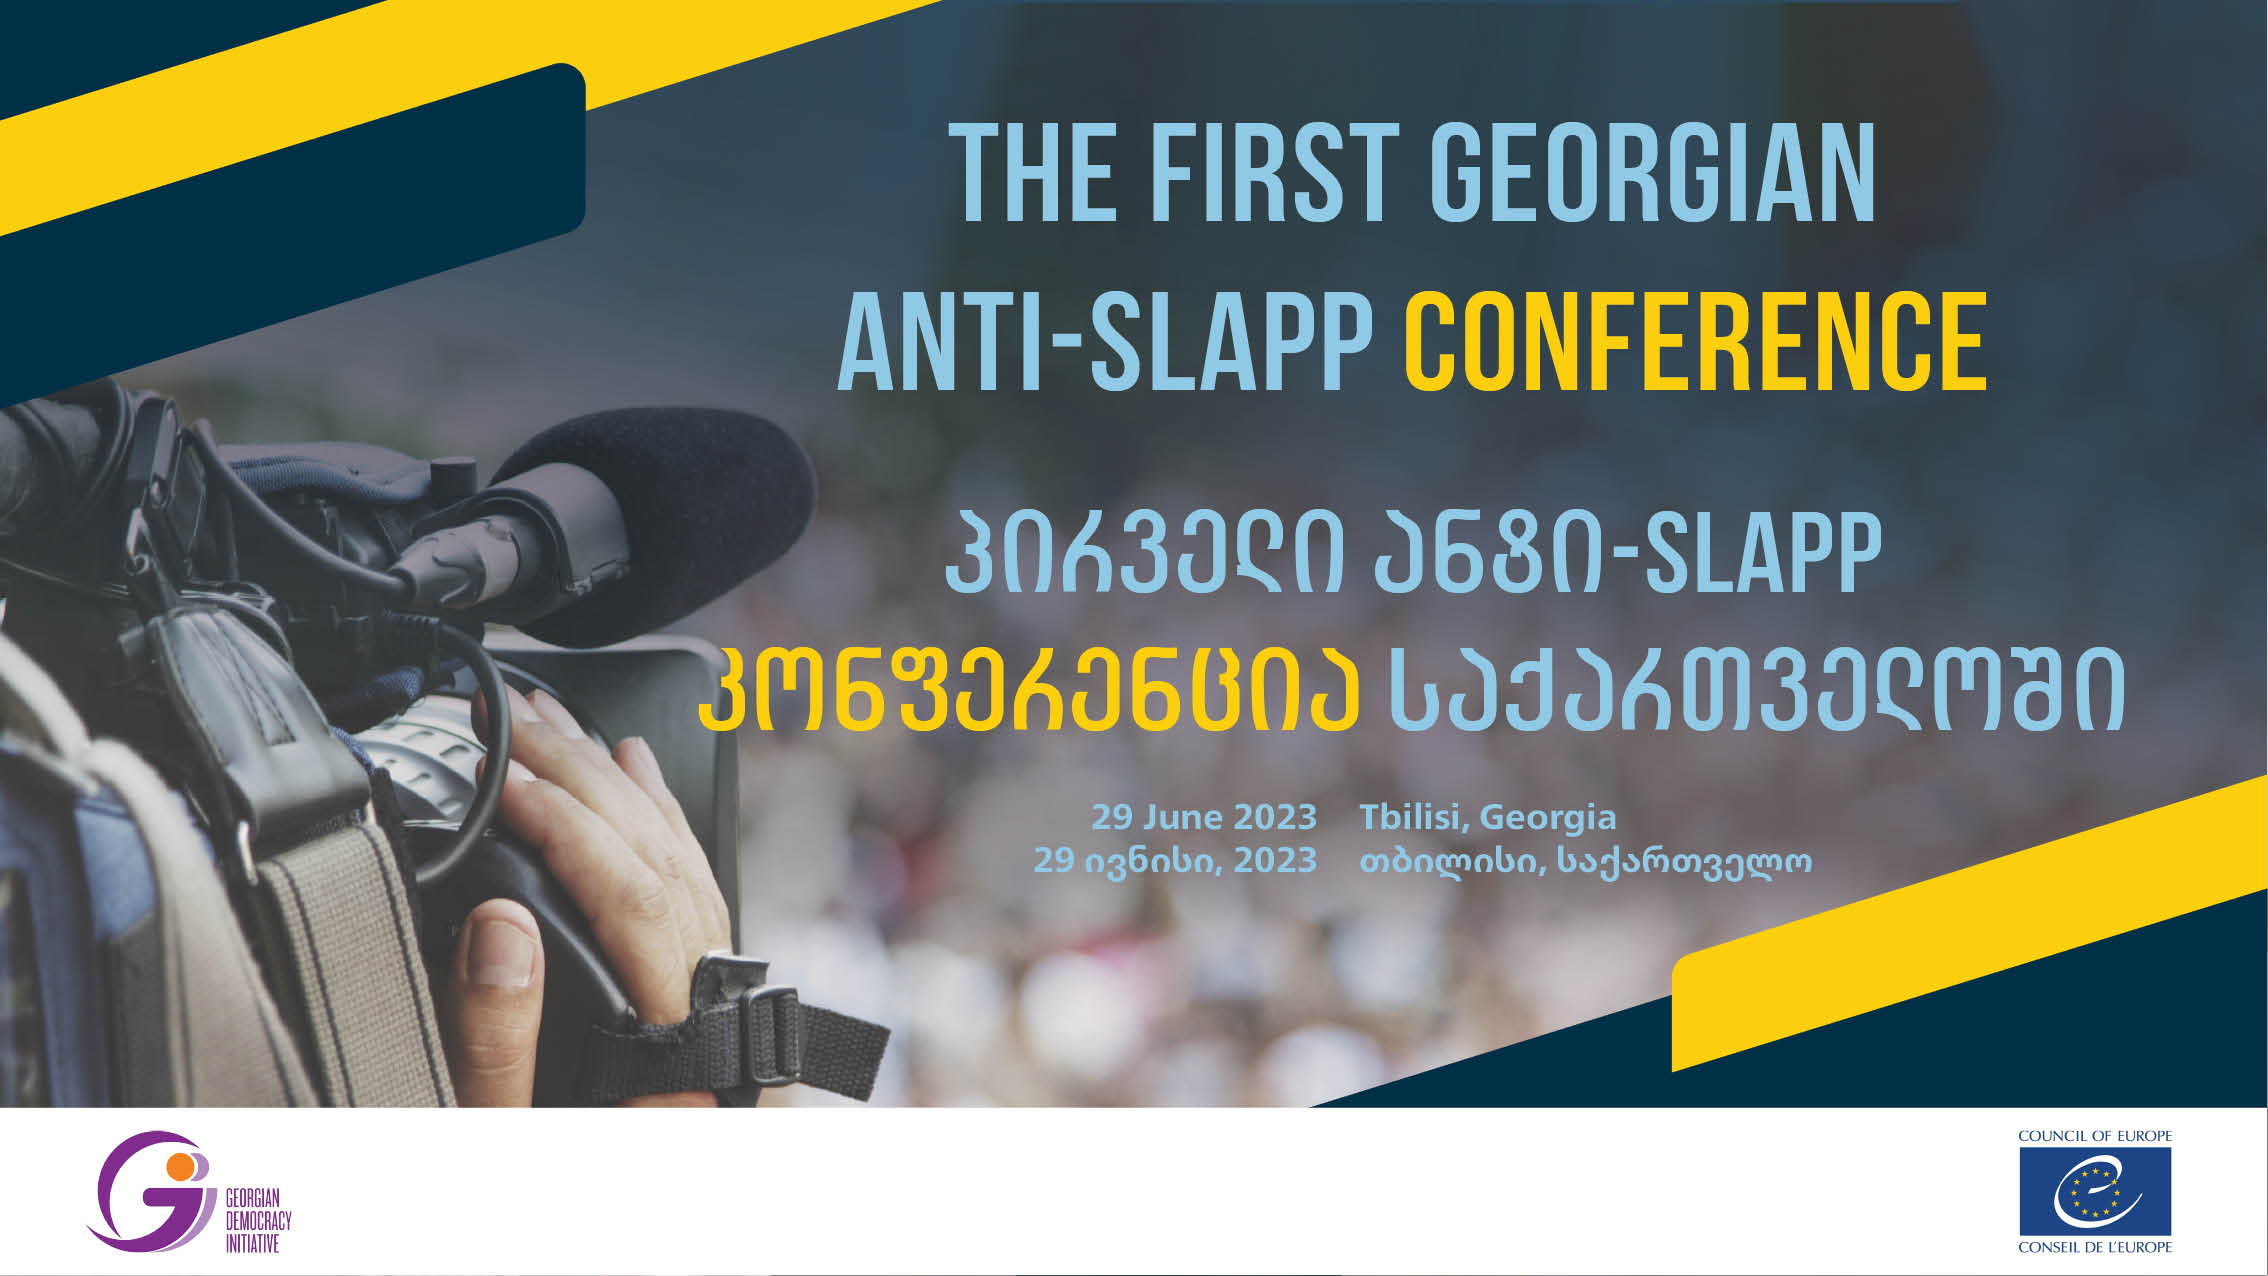 თბილისში პირველი ანტიSLAPP კონფერენცია გაიმართება